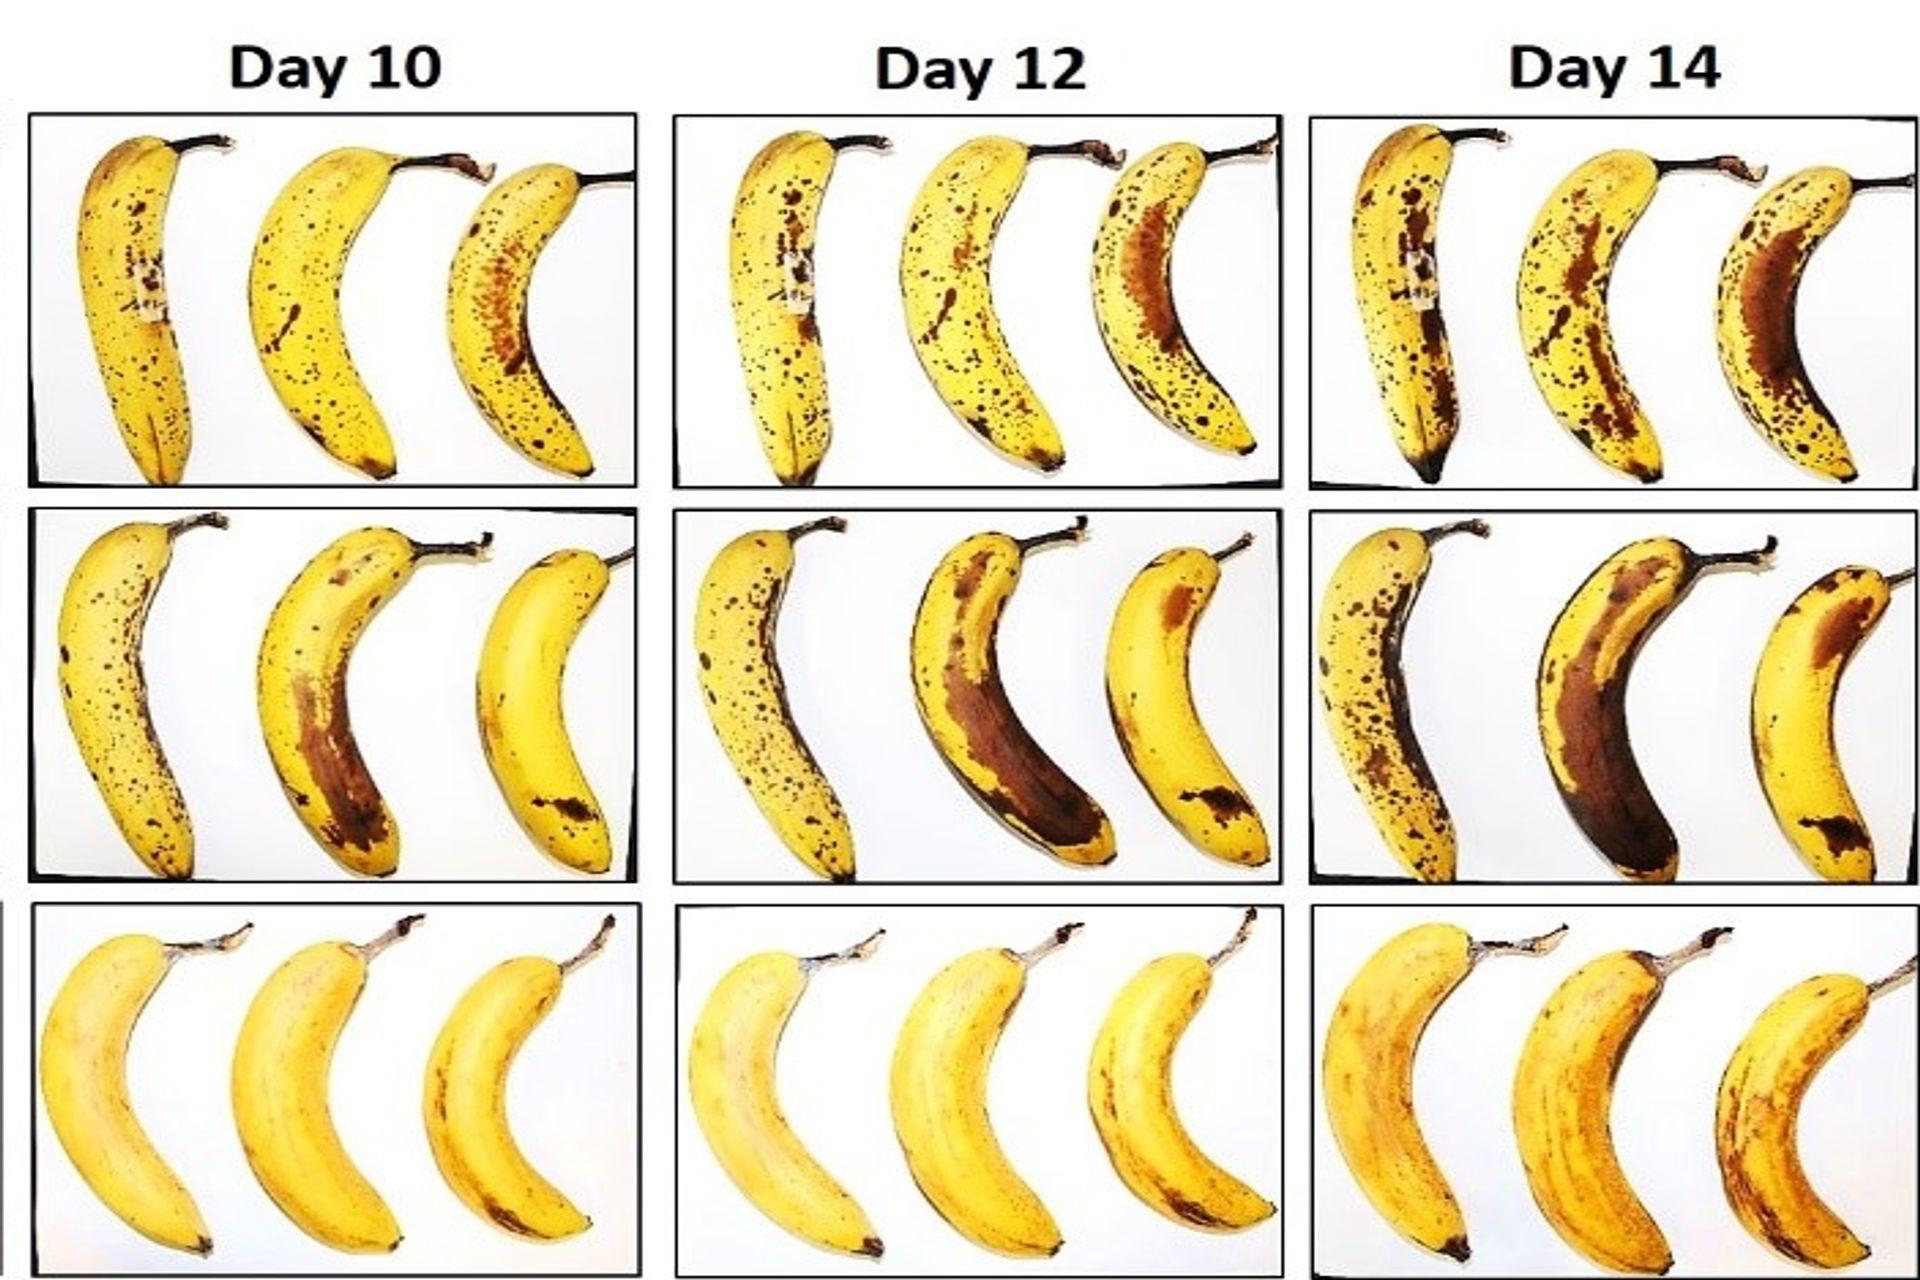 Tri banány, ktoré EMPA a Lidl Švajčiarsko podrobili testu konzervácie s vláknitým celulózovým obalom a bez neho po 10, 12 a 14 dňoch